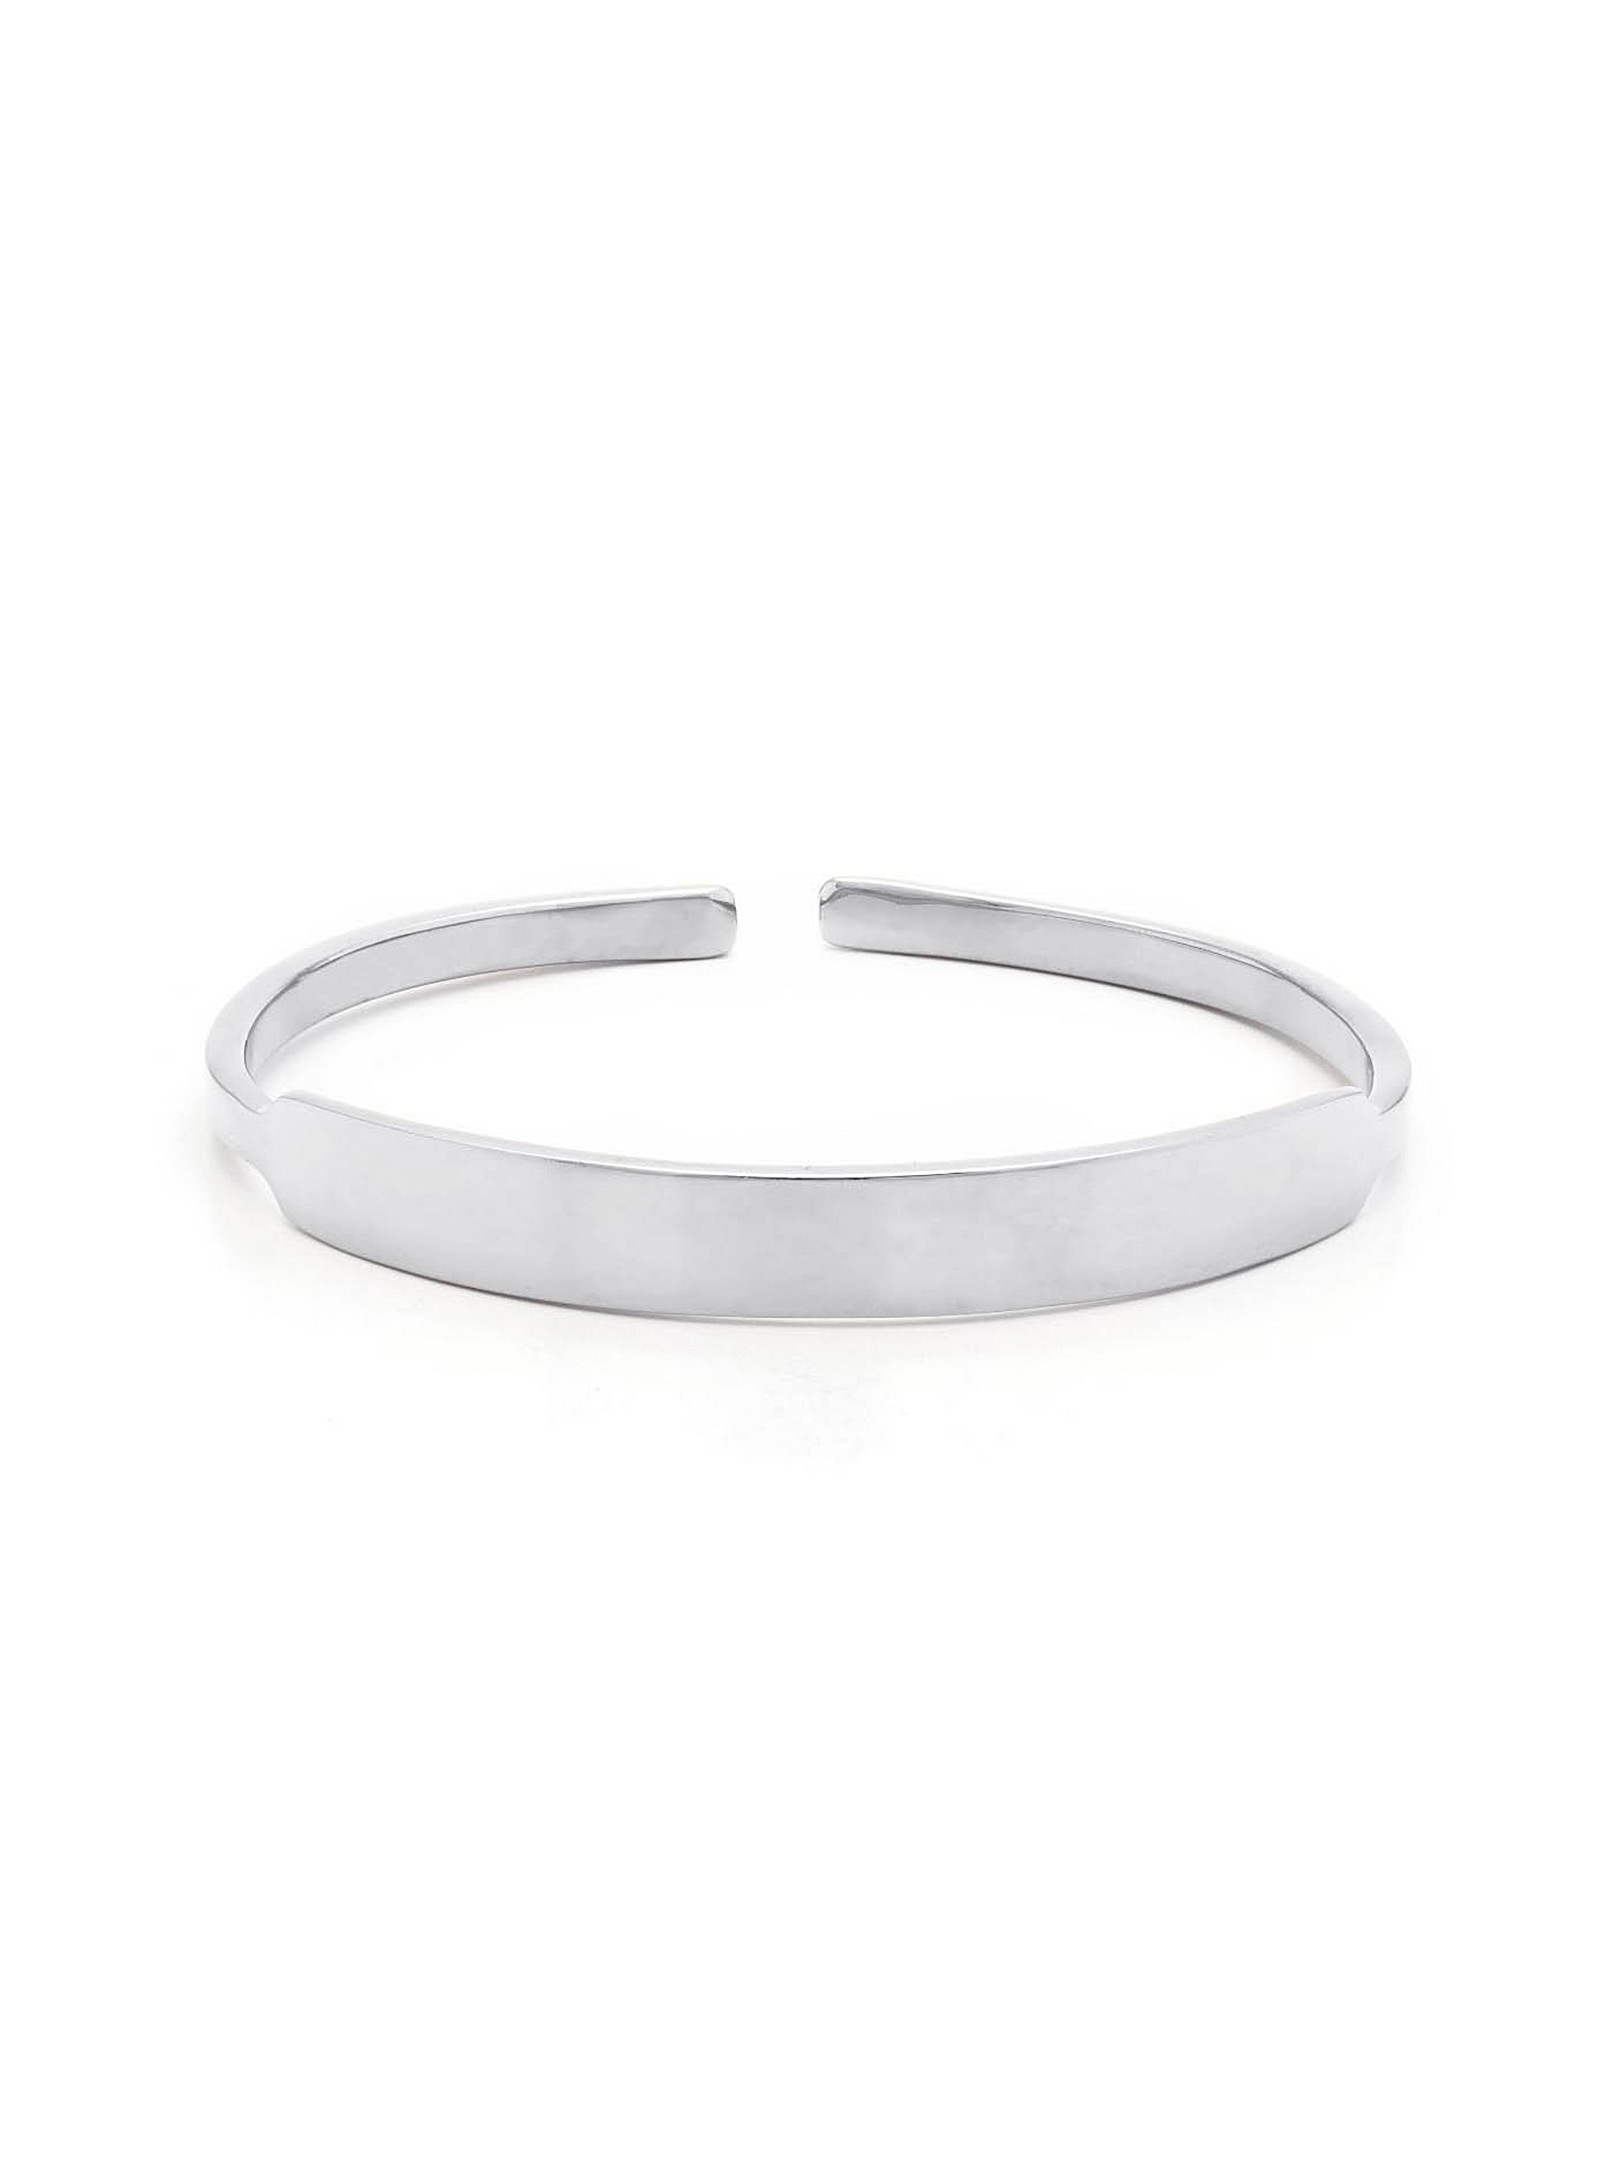 Obakki - Upcycled silver cuff bracelet